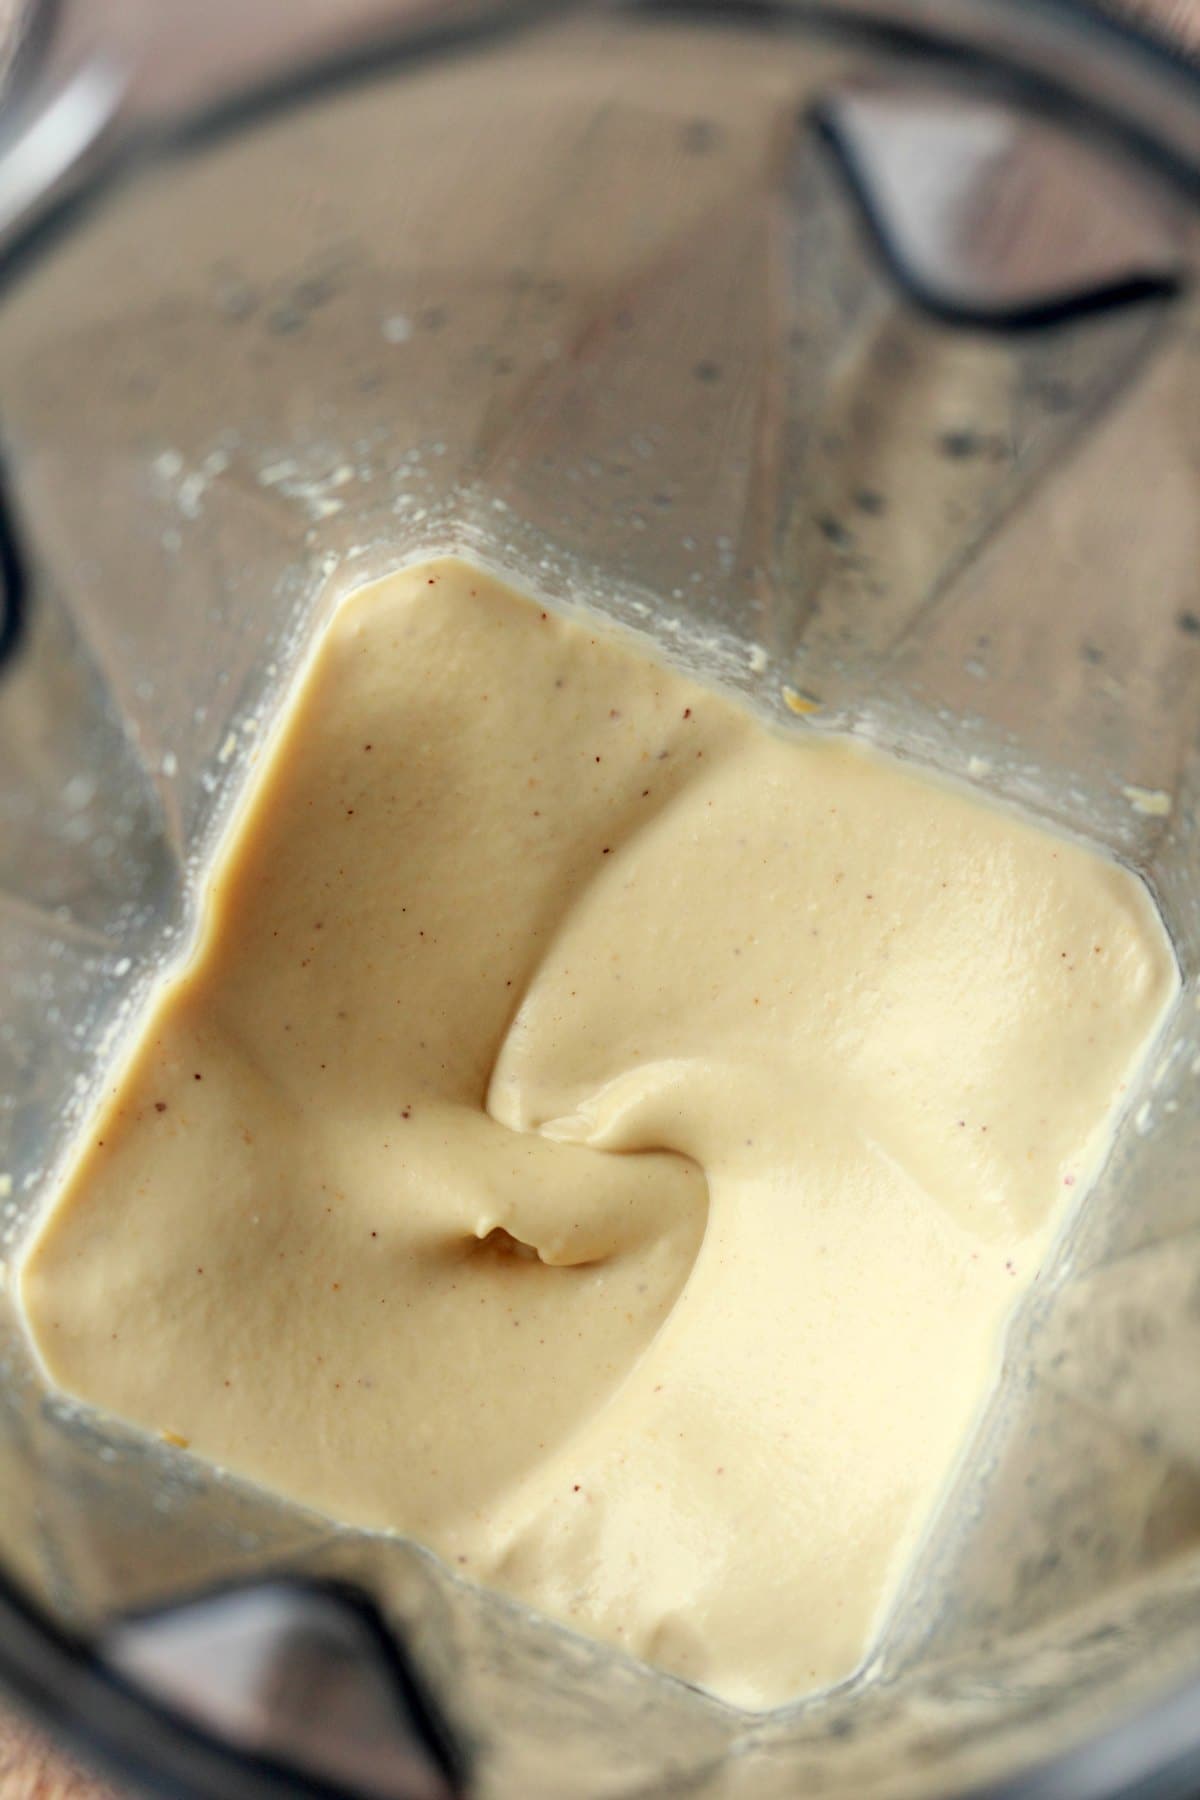 Vegan sour cream freshly blended in the blender jug. 